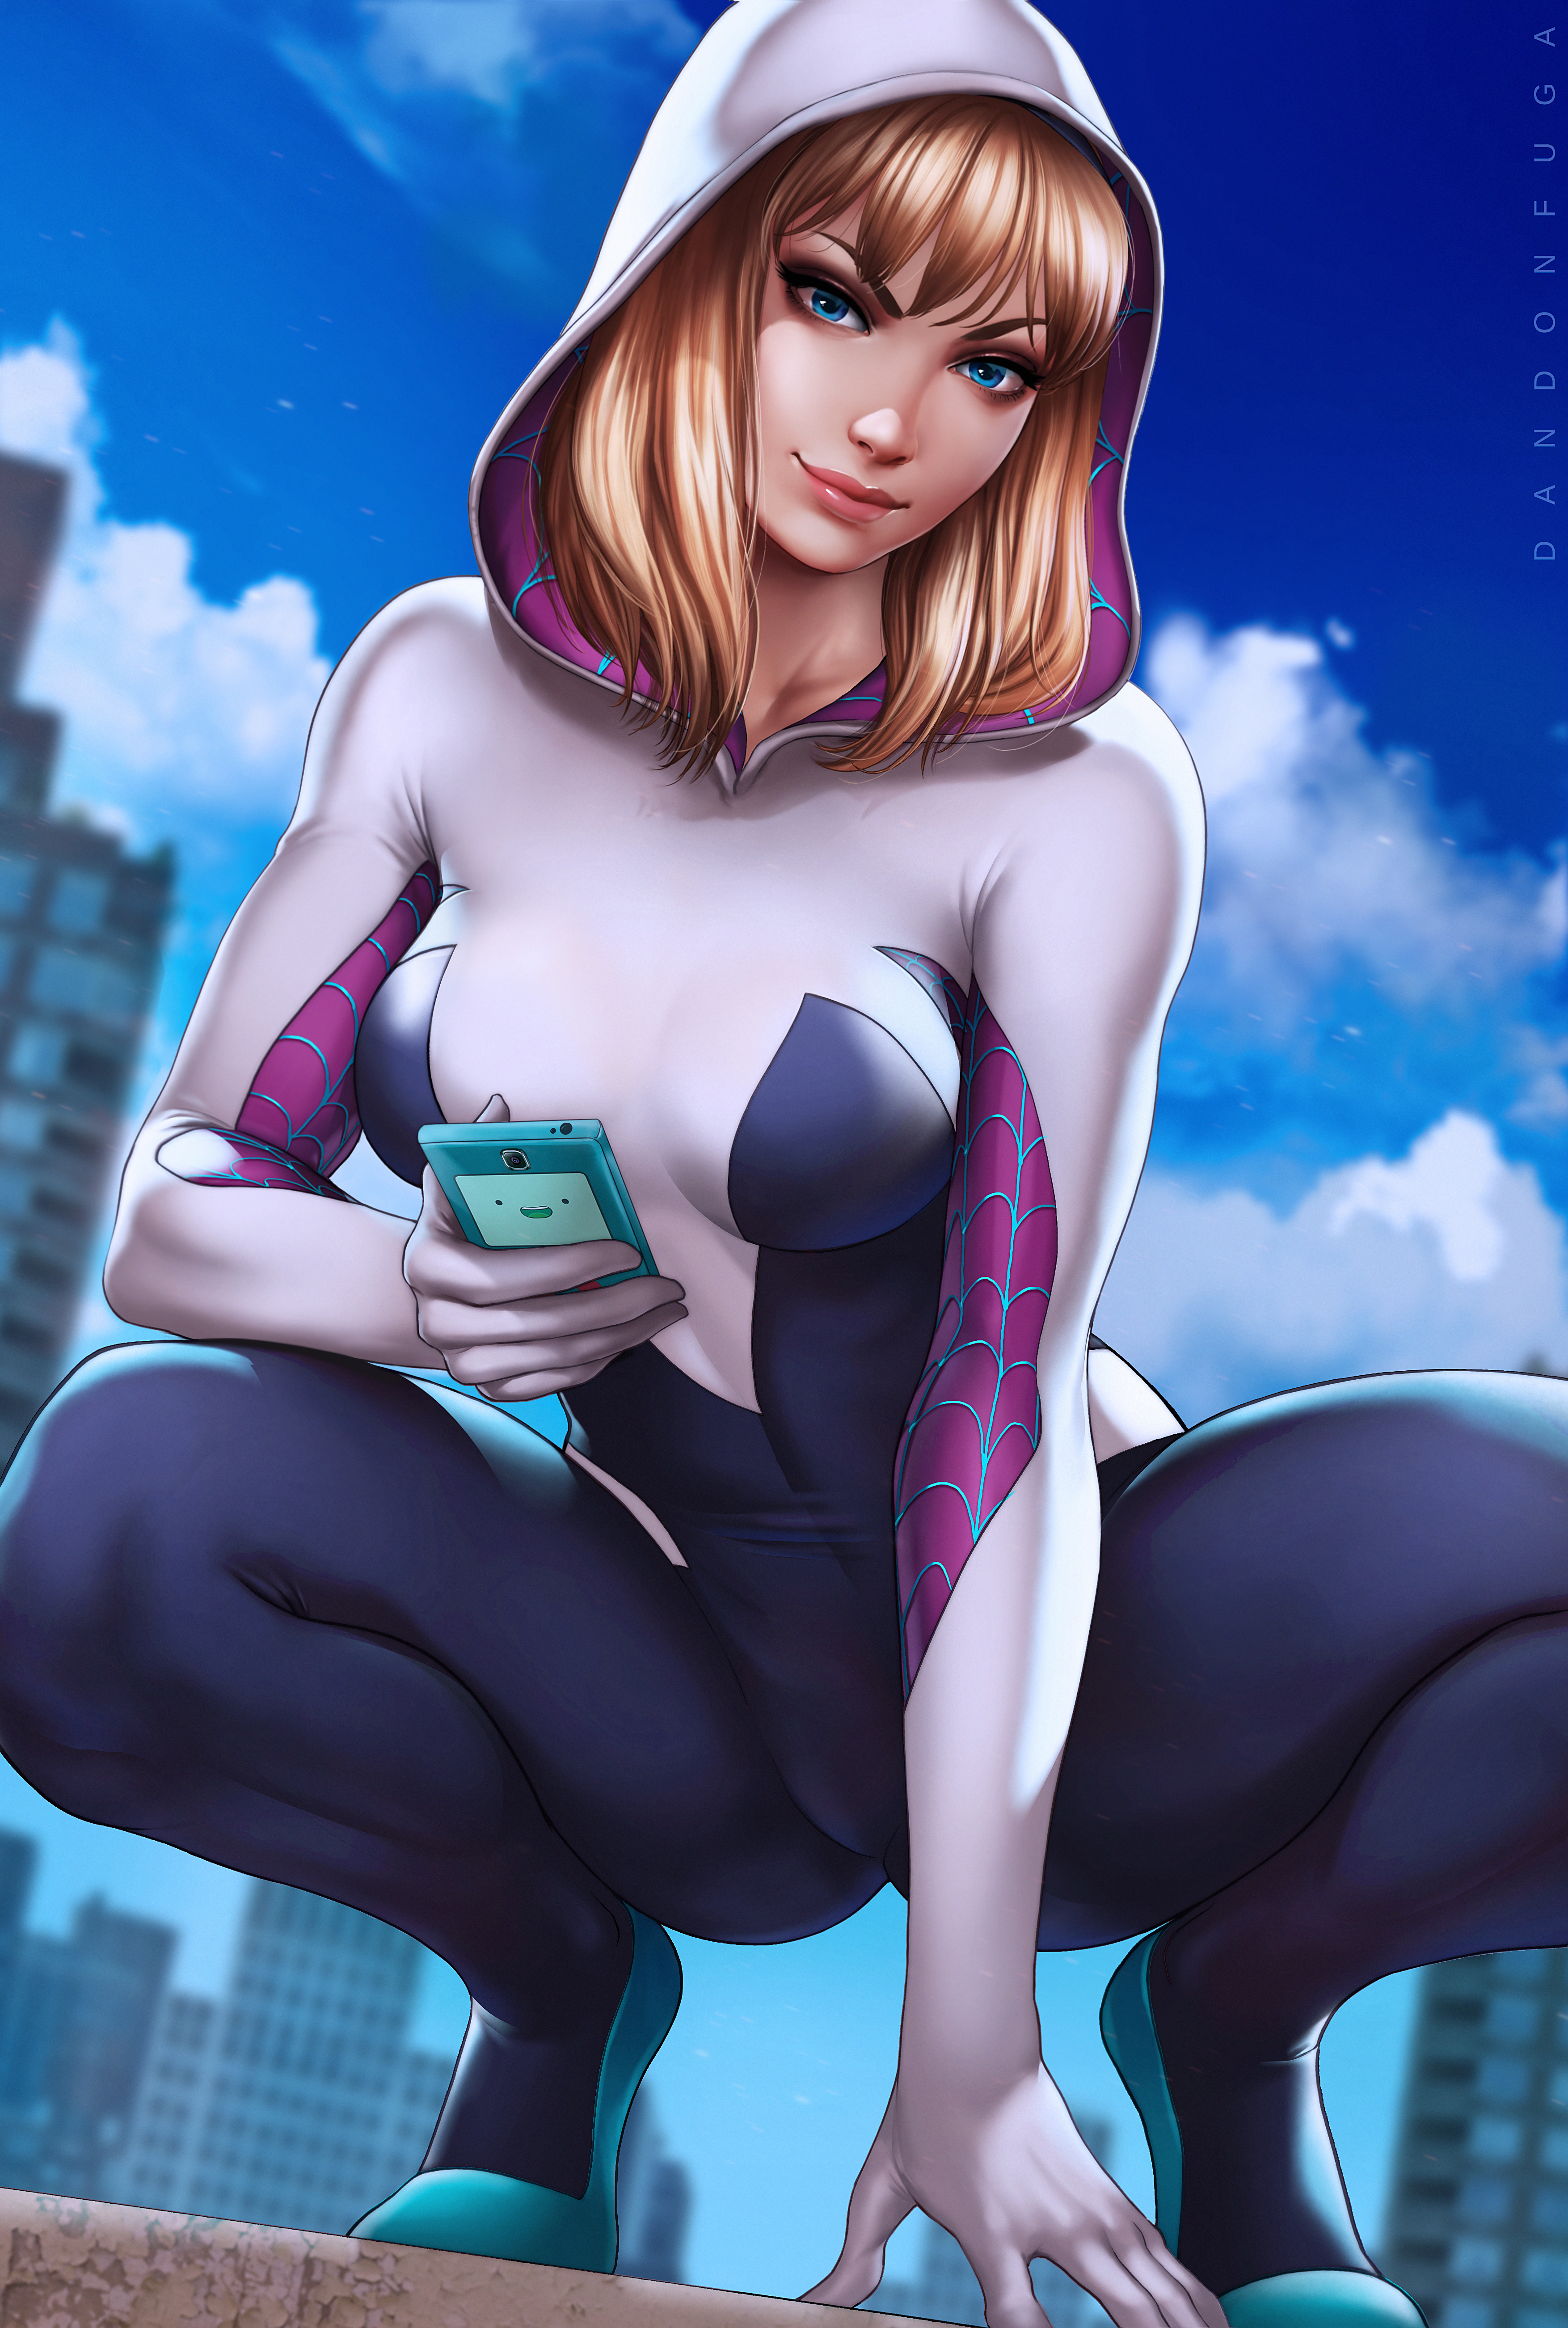 Gwen Stacy Spider Gwen Blonde Hoods Marvel Comics Bangs Blue Eyes Looking At Viewer Cellphone 2D Art 3508x5207